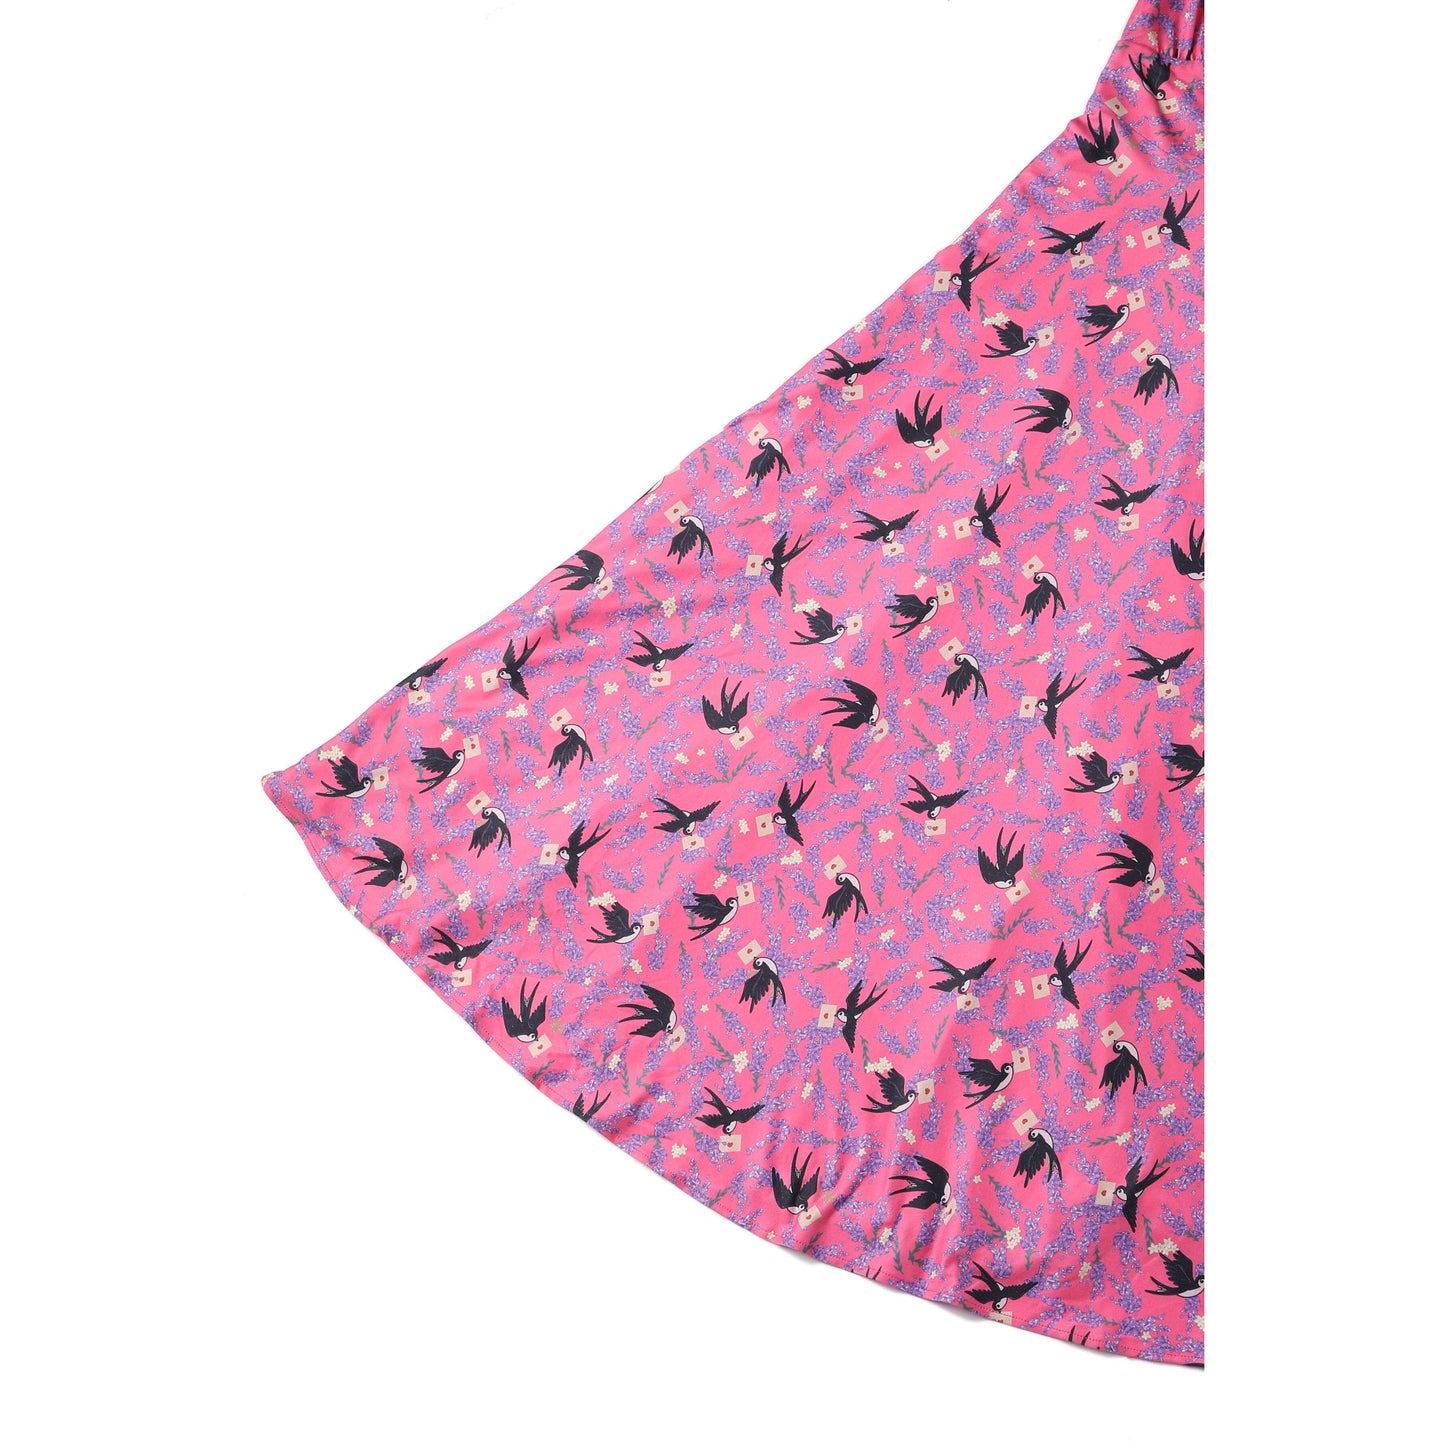 Pink Swallow Summer Dress